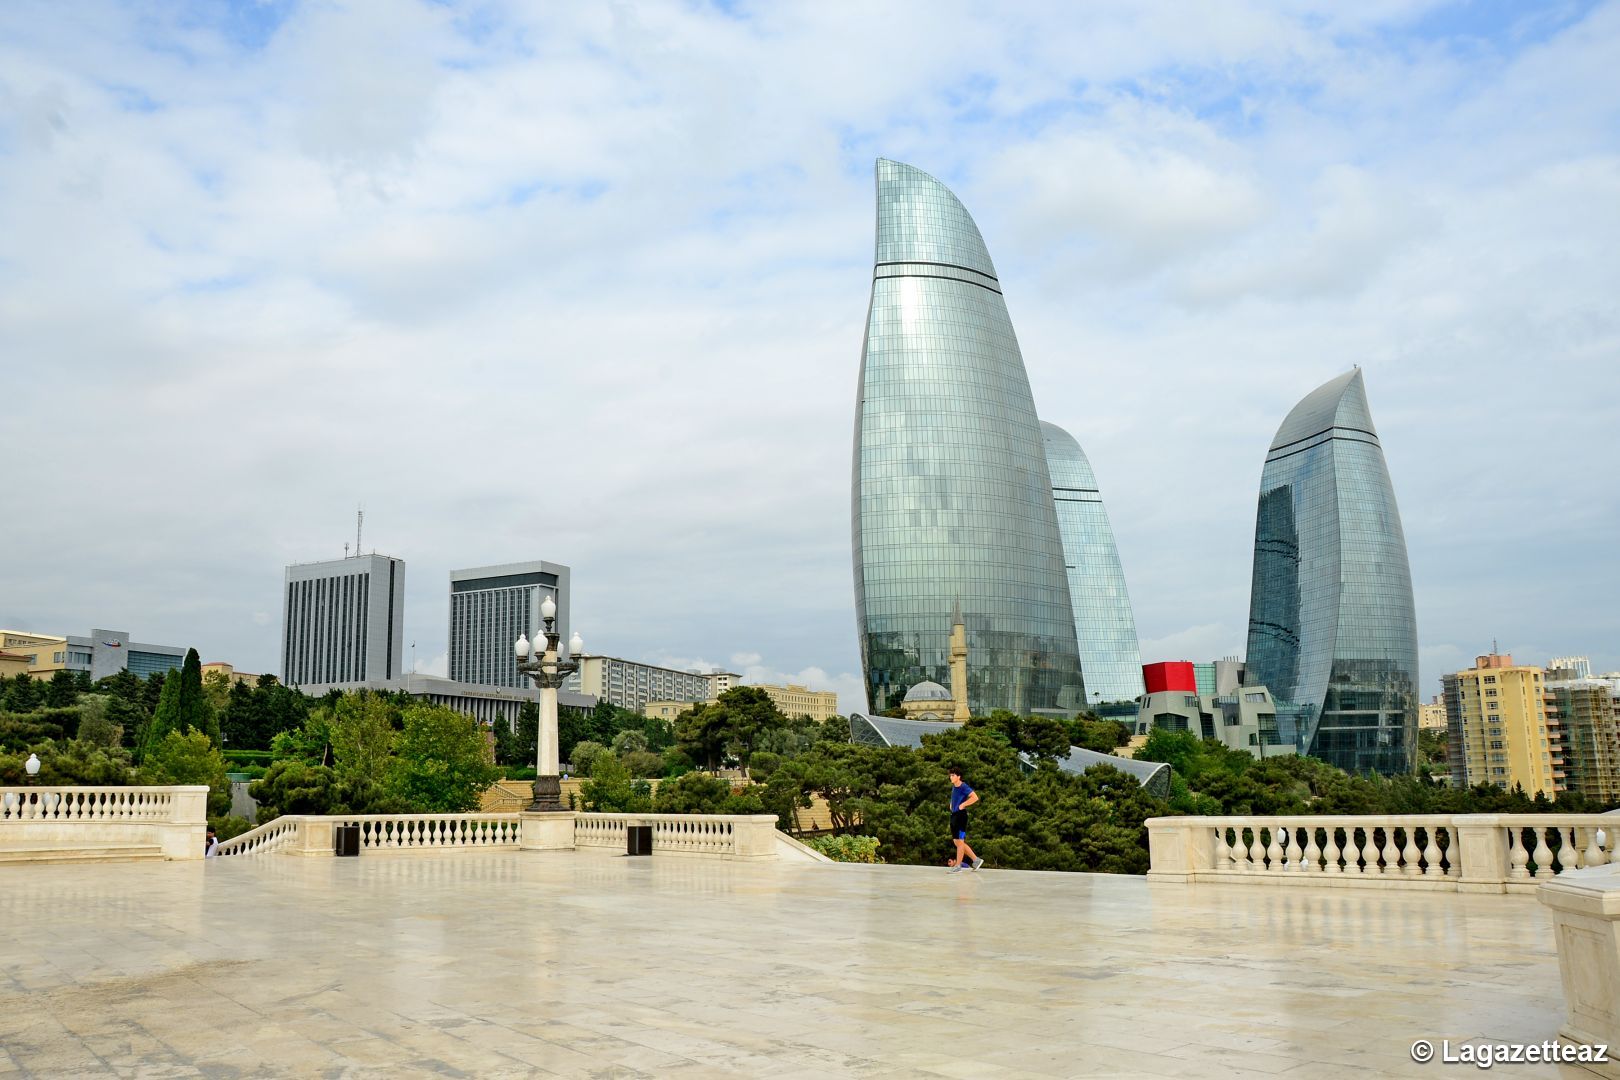 La Banque asiatique de développement approuve un prêt de 250 millions de dollars pour l'Azerbaïdjan afin d'atténuer les effets néfastes de la pandémie de COVID-19